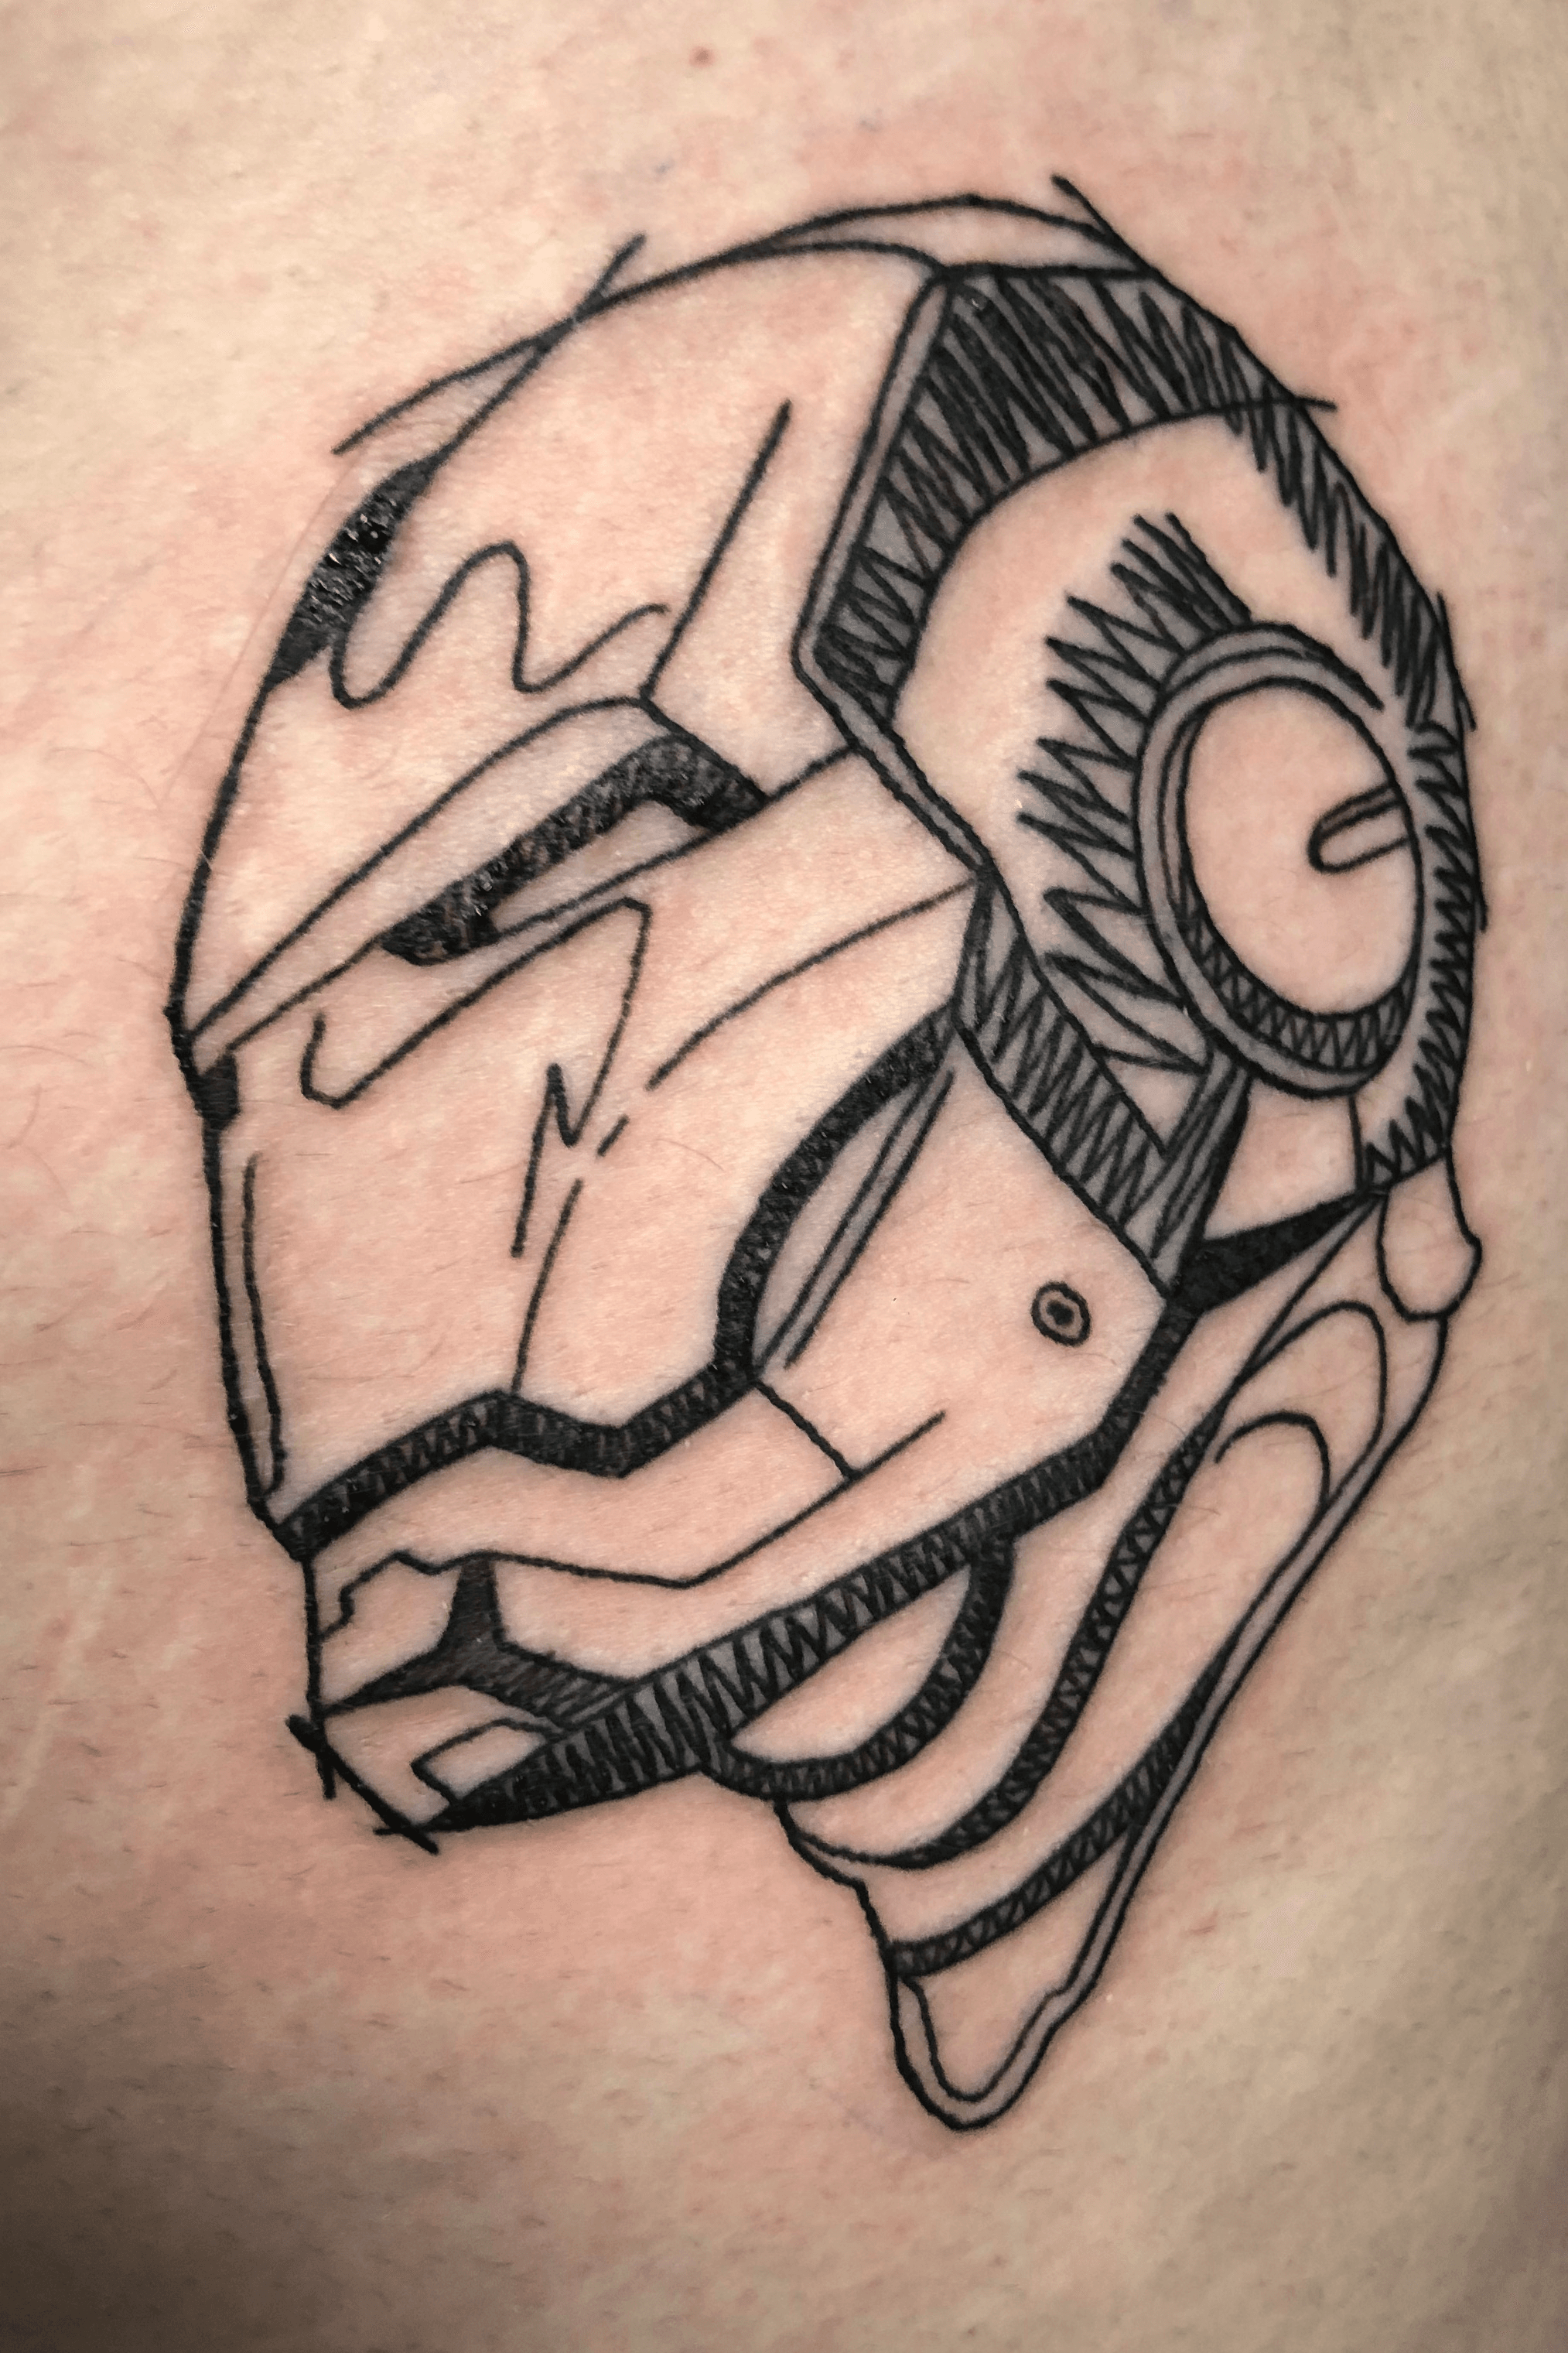 תוצאת תמונה עבור ironman tattoo  Iron man tattoo Small tattoos Tattoos